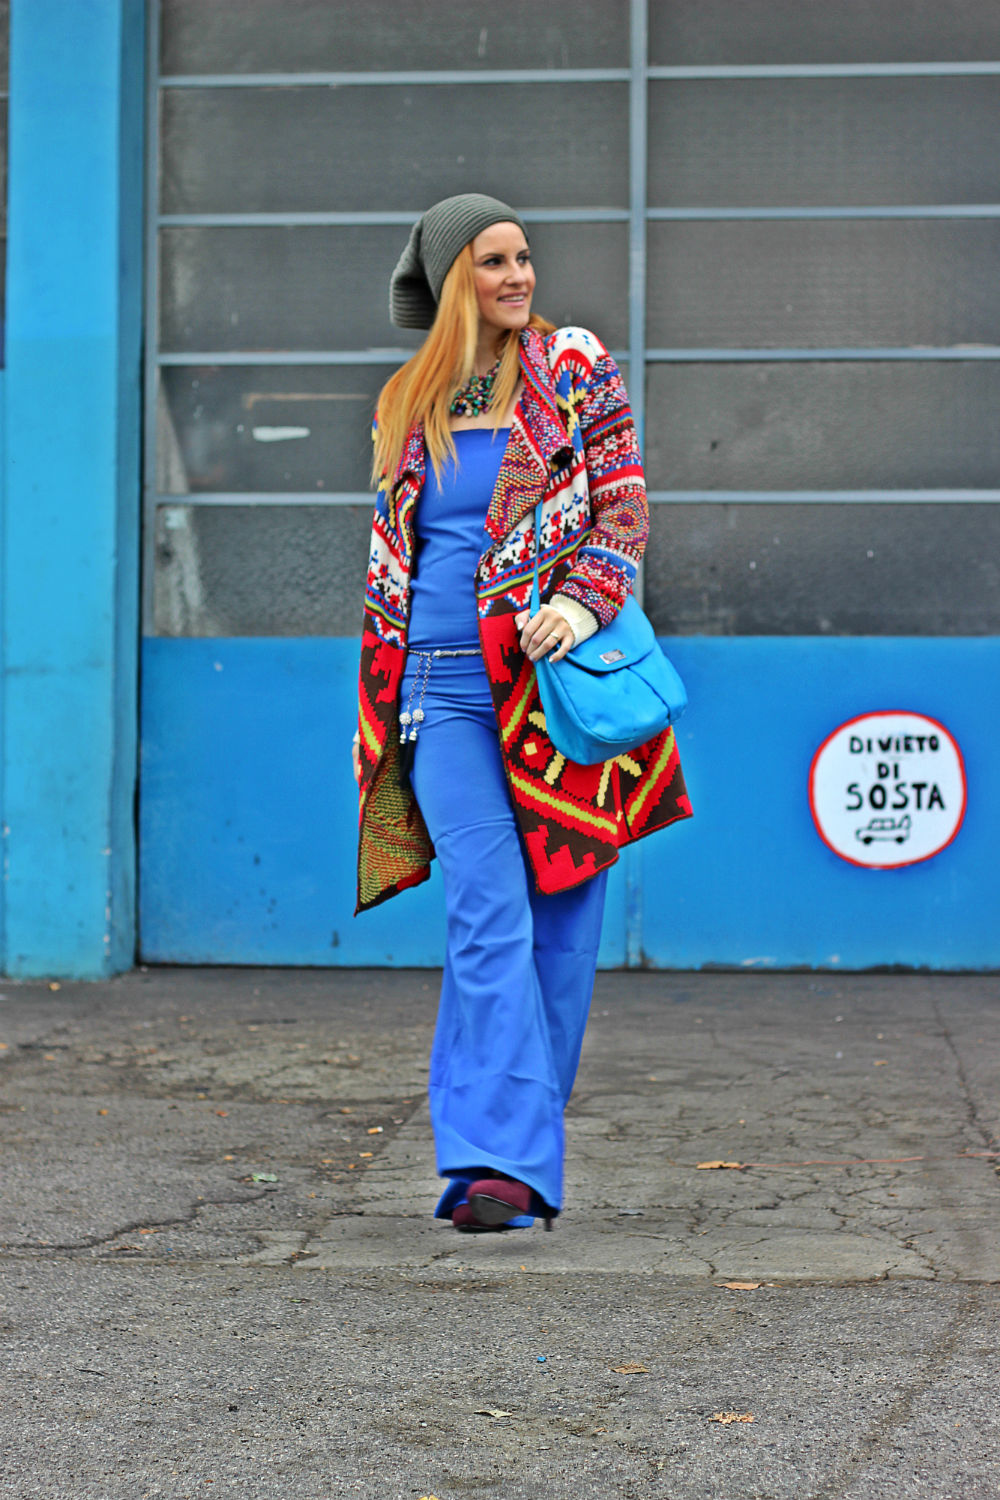 elisabetta bertolini - fashion blogger italiane - blog di moda - cozy style - outfit  etnico - autun